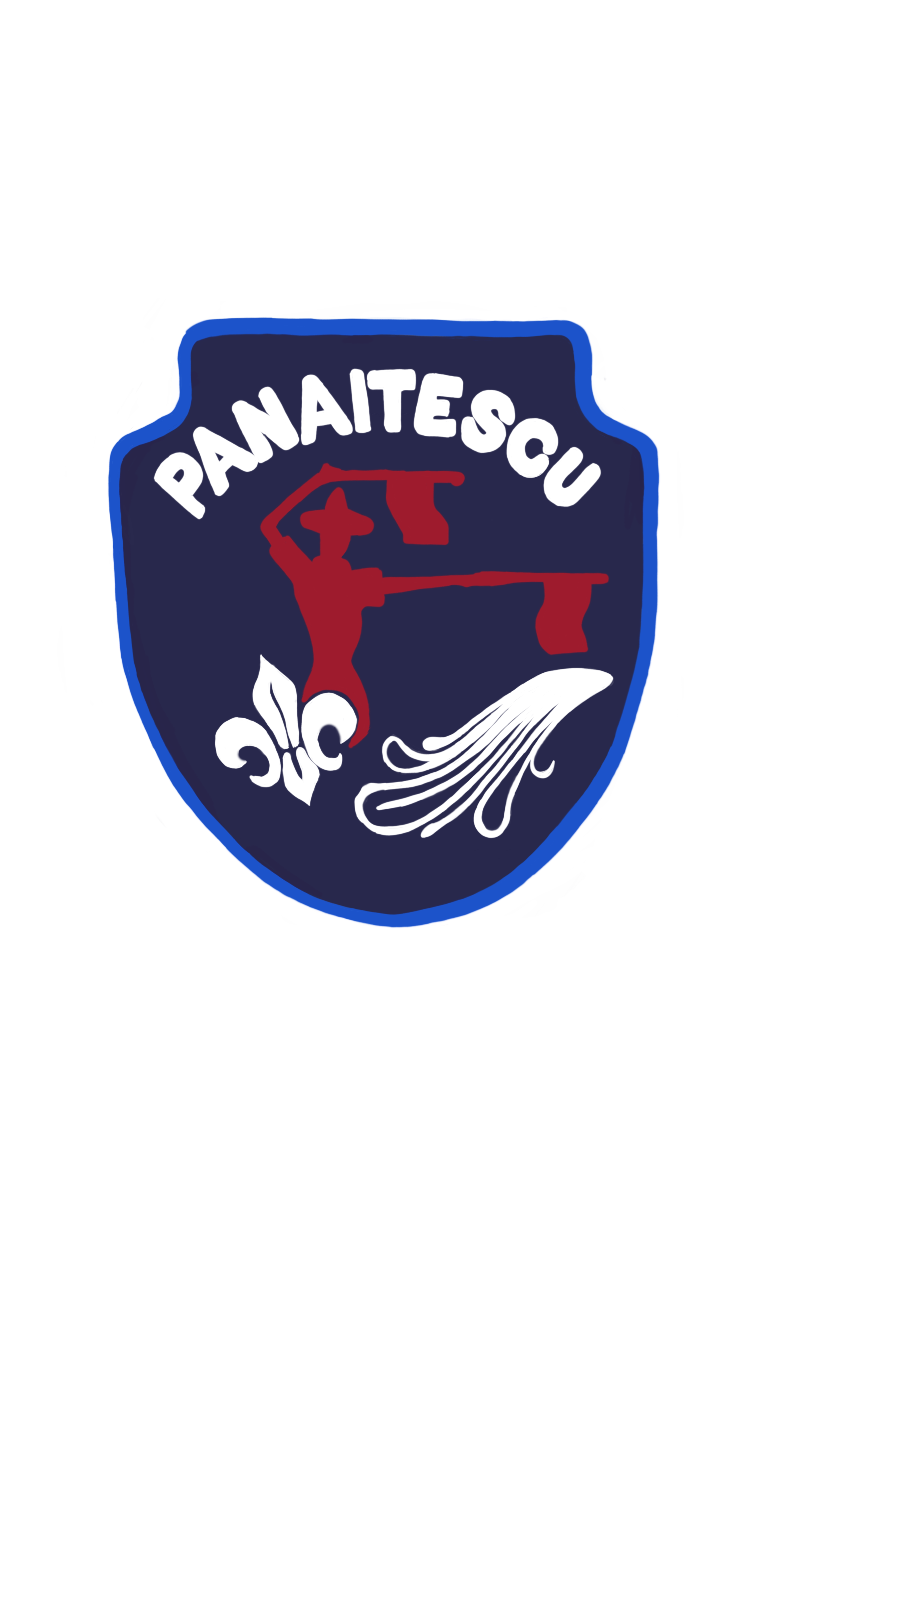 Filiala "Centru Local Panaitescu" al Organizatiei Nationale "Cercetasii Romaniei" logo